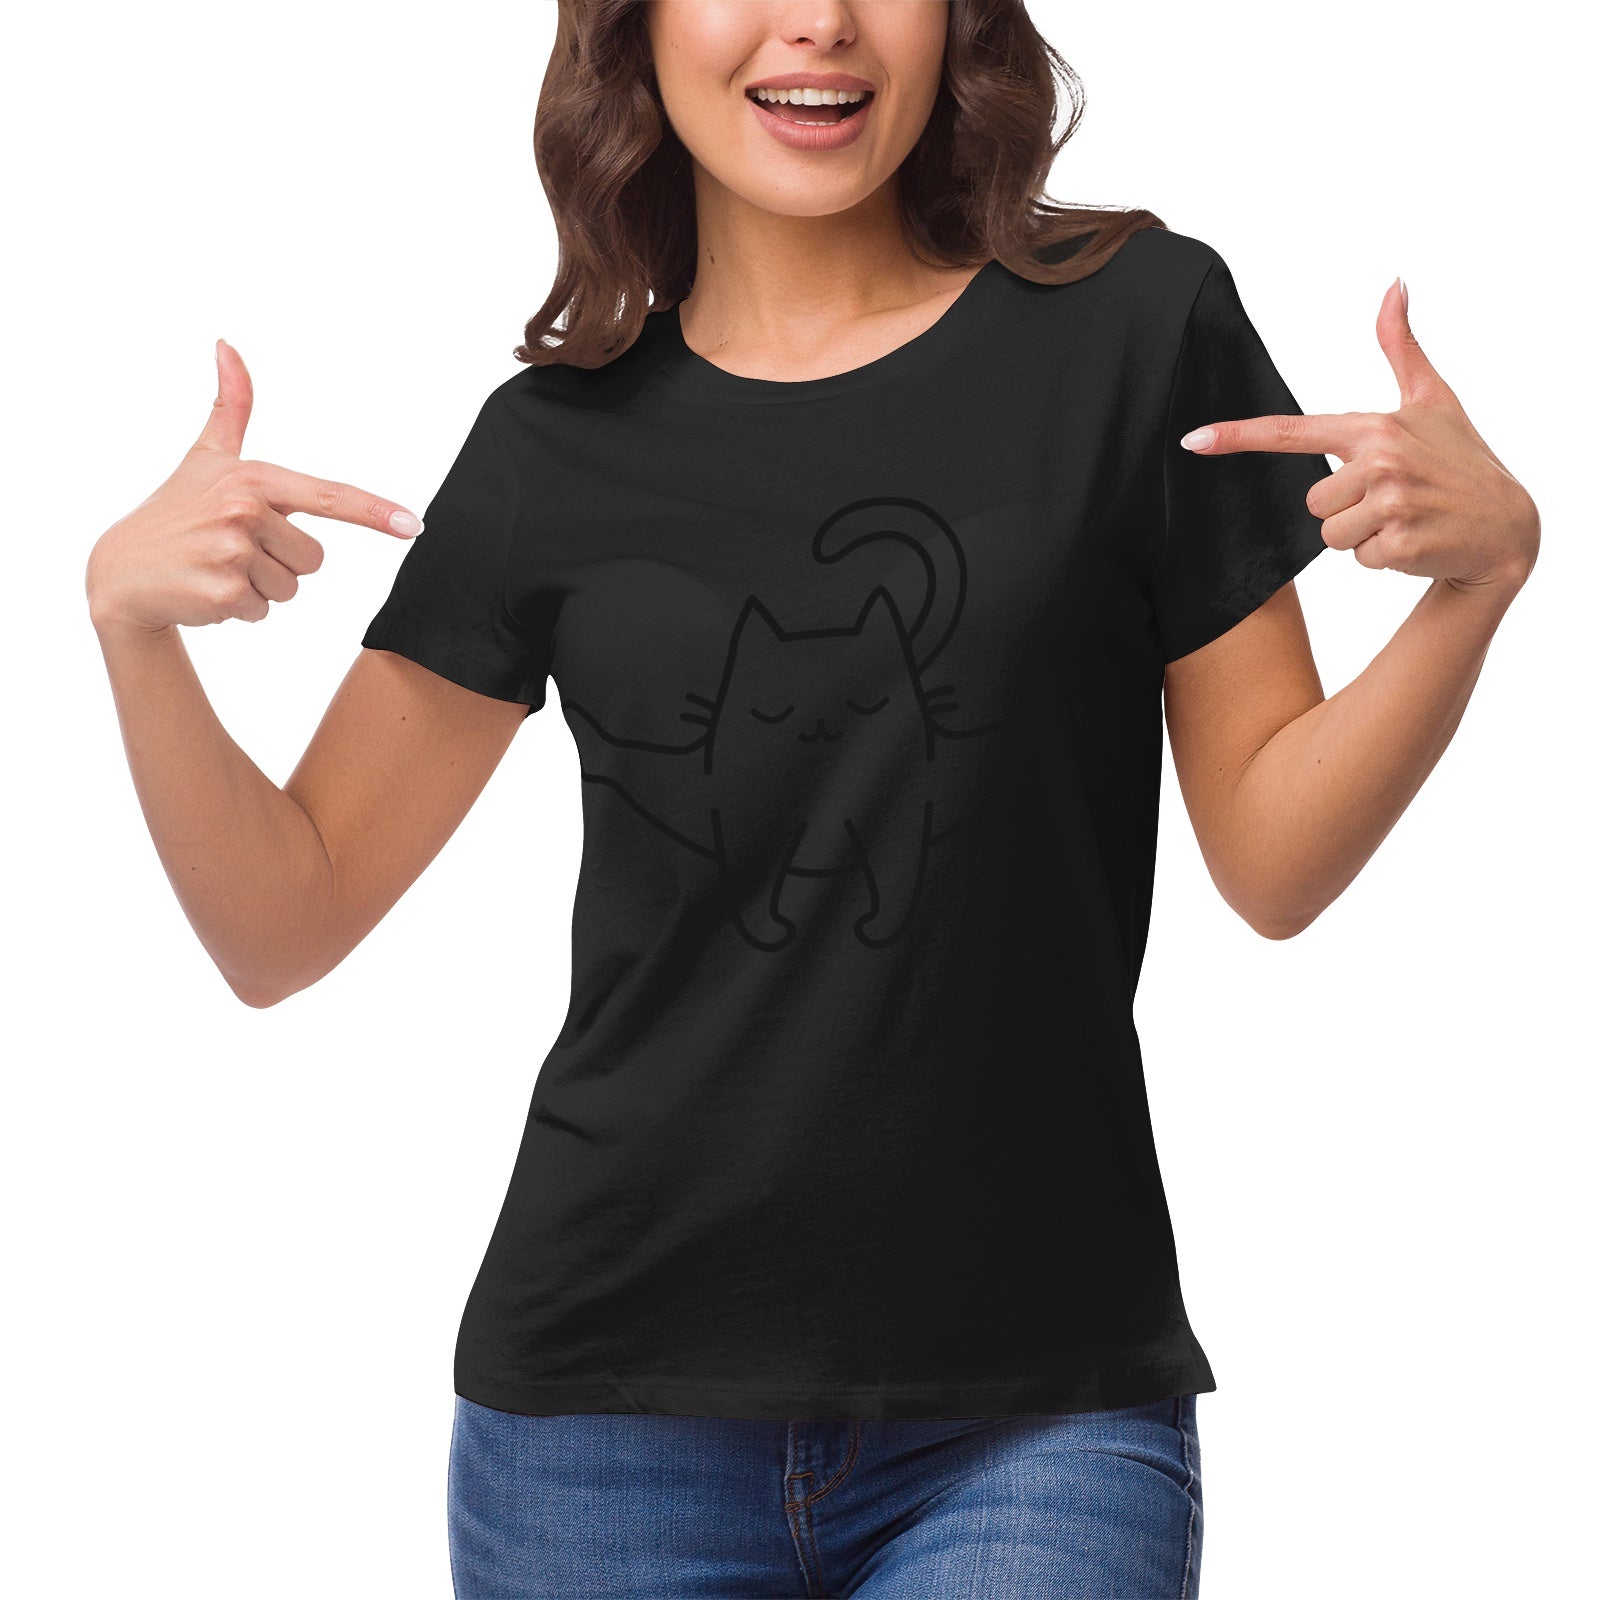 Yoga Cat 3 Women's Ultrasoft Pima Cotton T‑shirt - DromedarShop.com Online Boutique